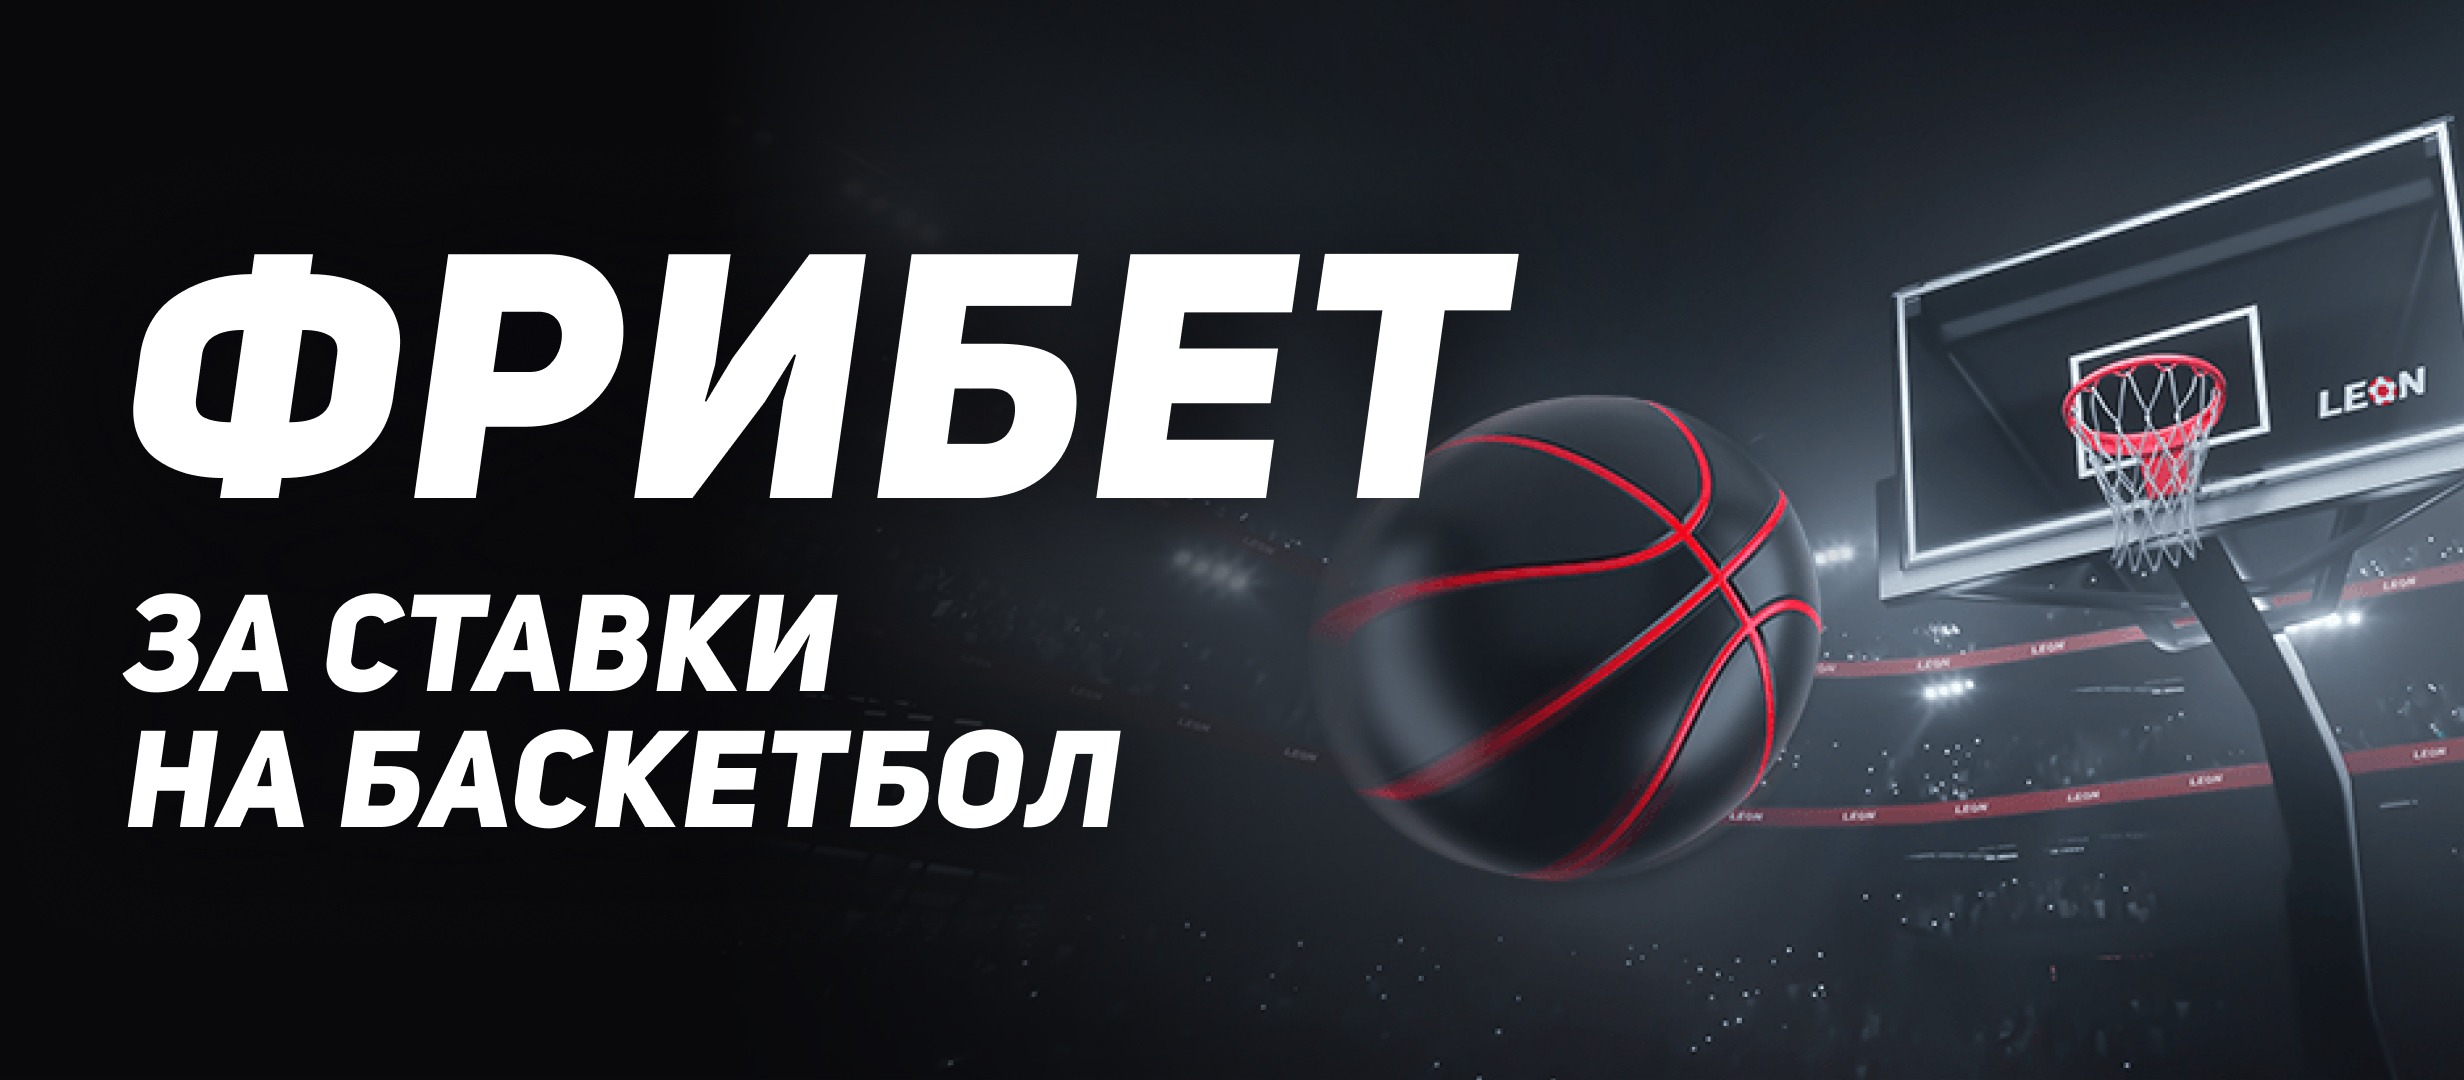 BK Leon razygryvaet fribety do 20 000 rublej za stavki na basketbol 1